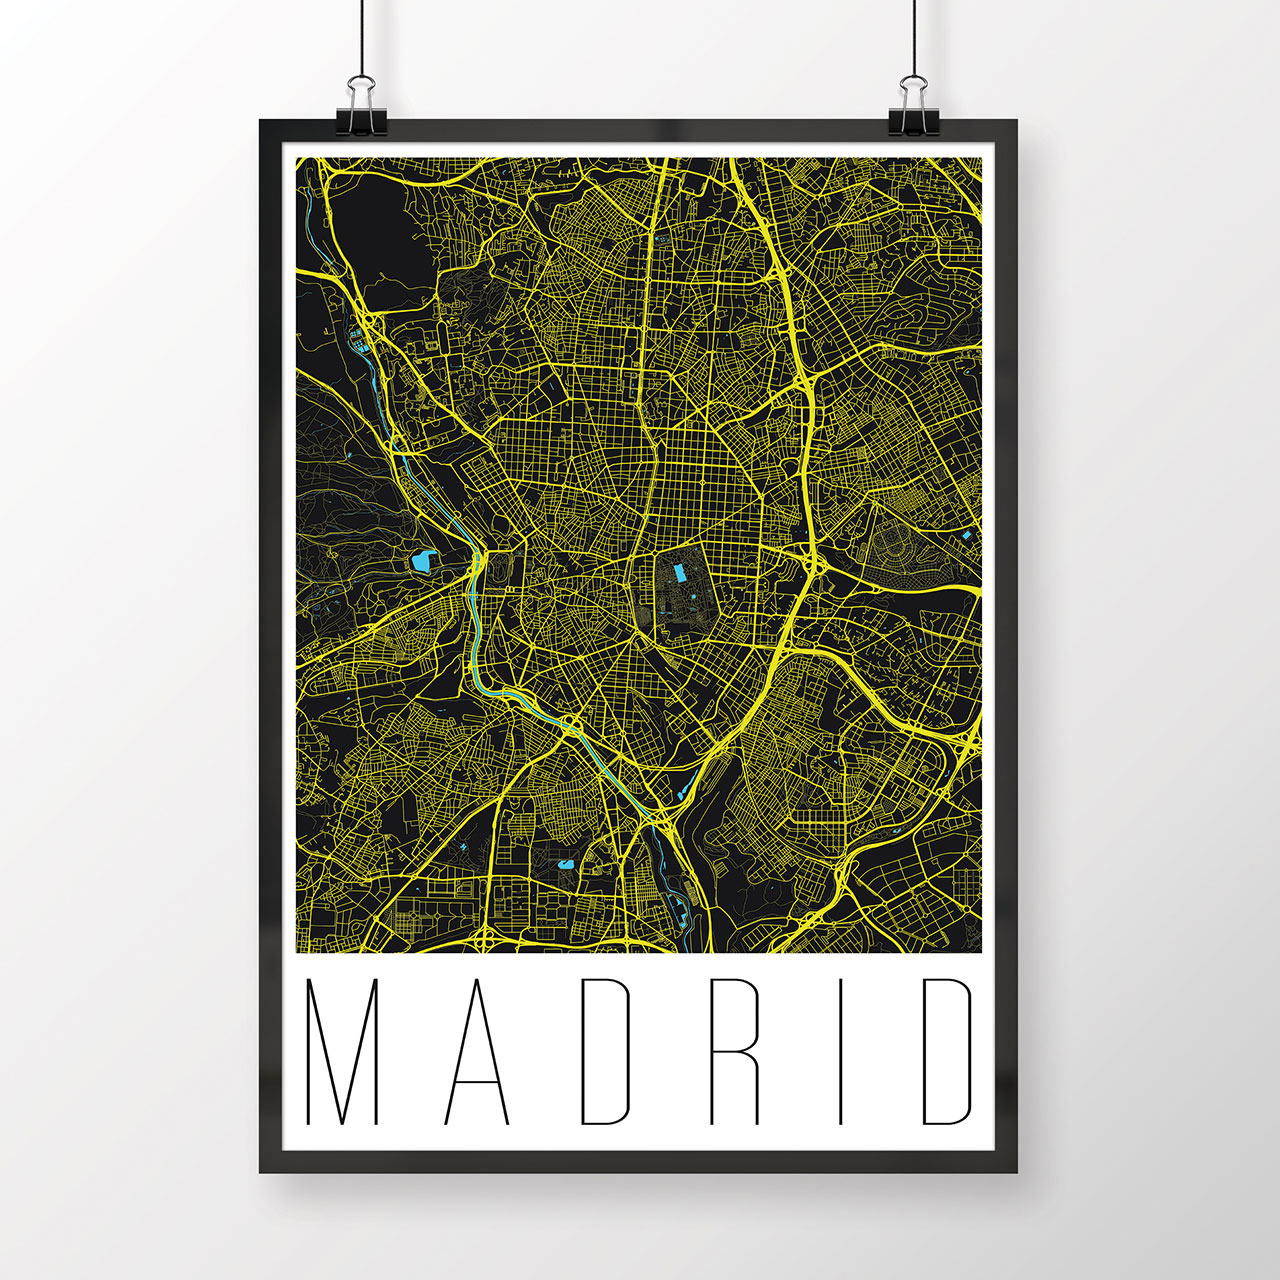 MADRID, moderný, čierny